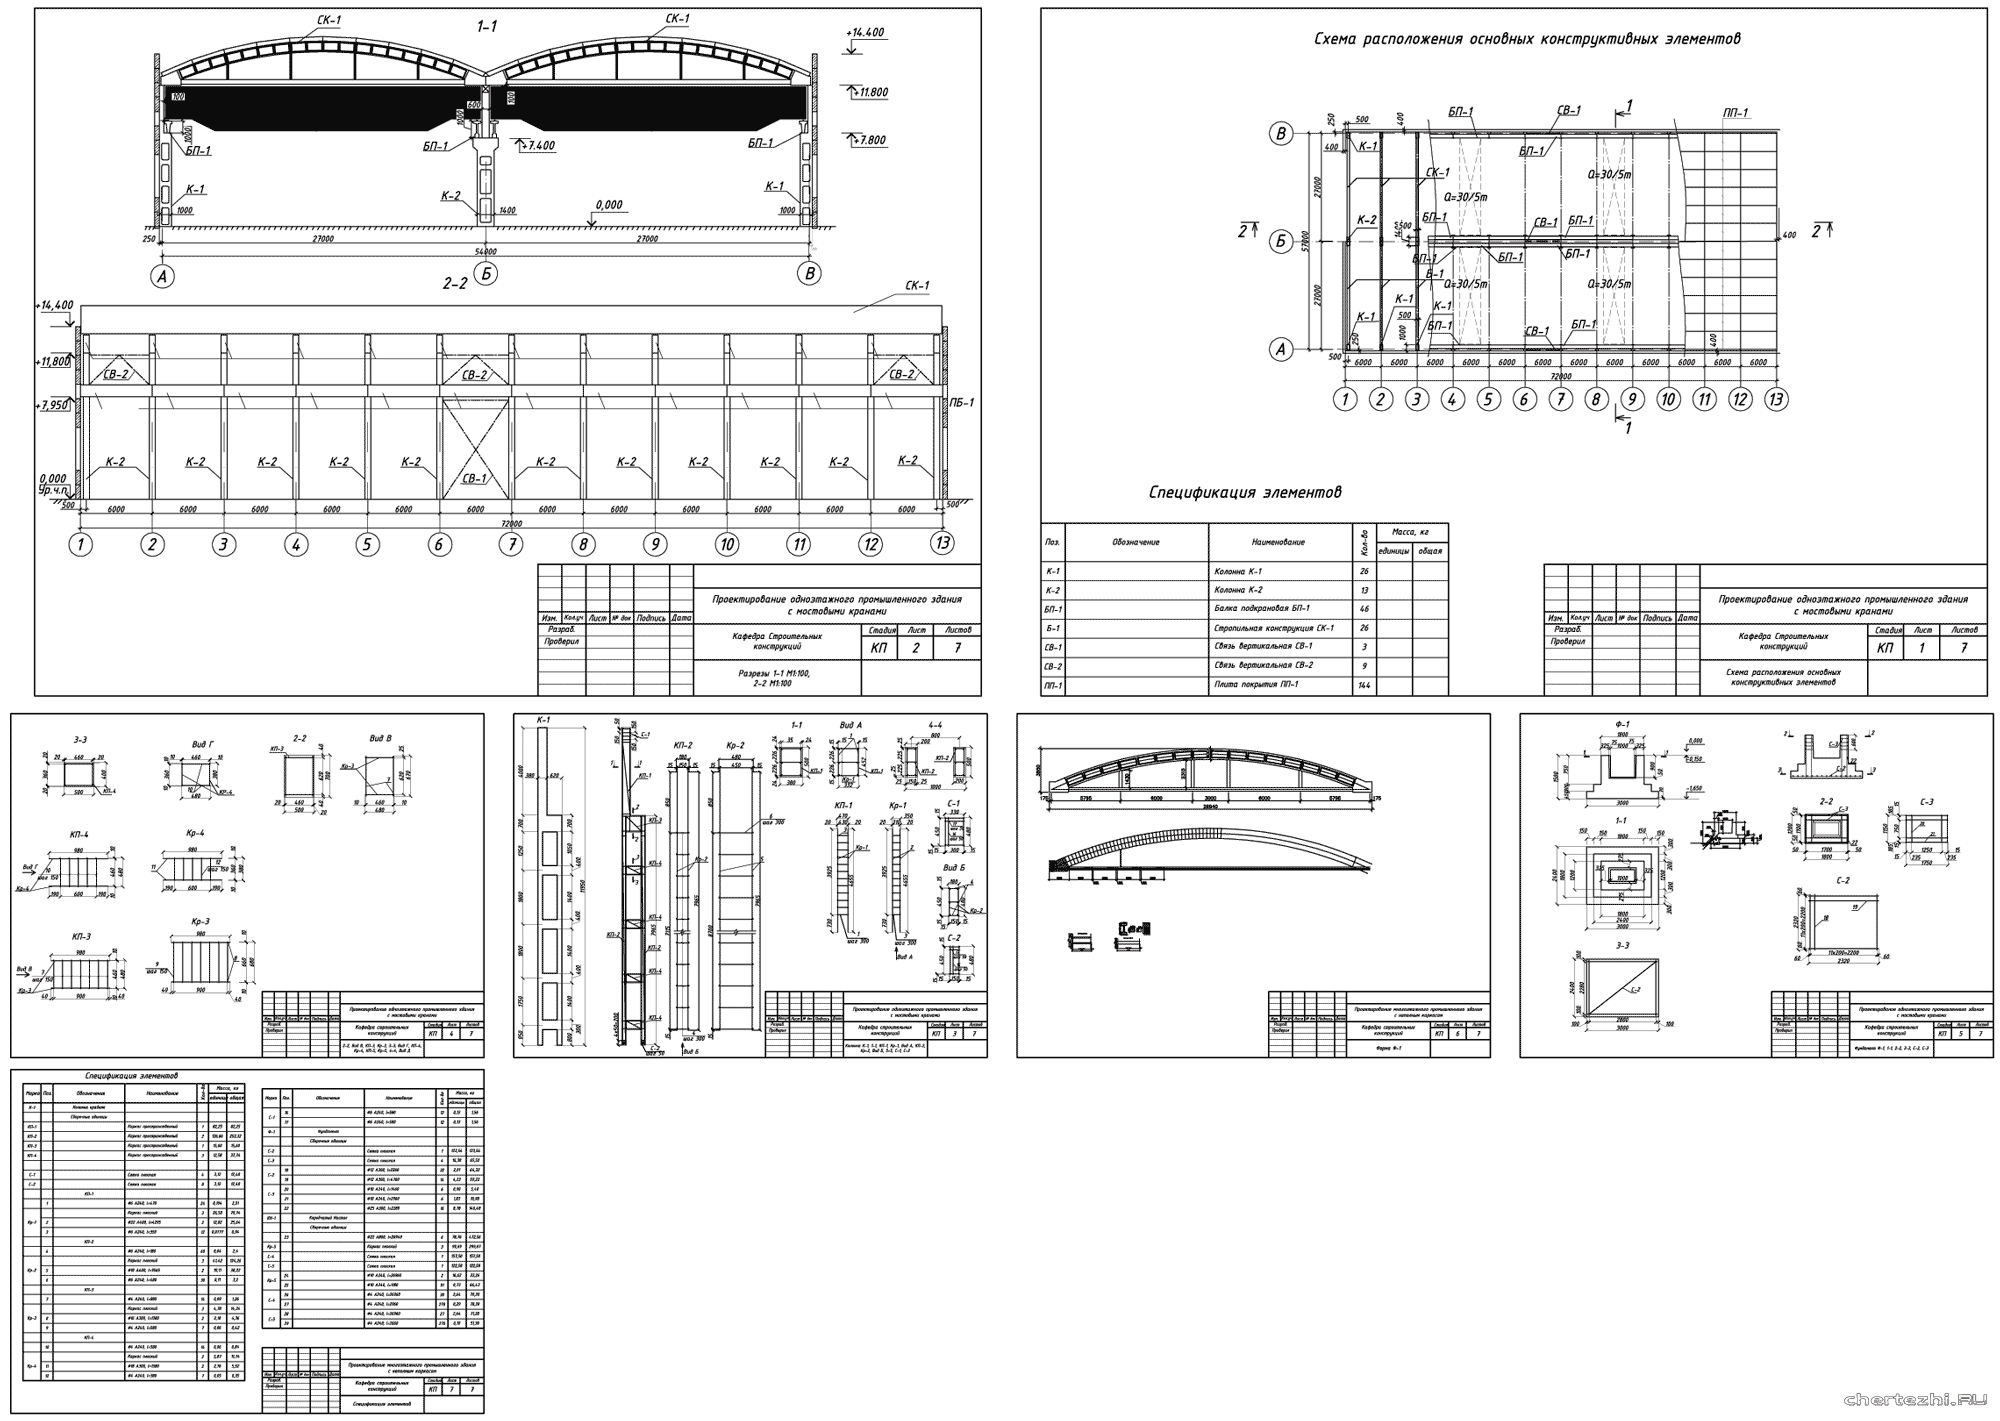 Курсовой проект - ЖБК Расчет и проектирование одноэтажного промышленного здания с мостовыми кранами